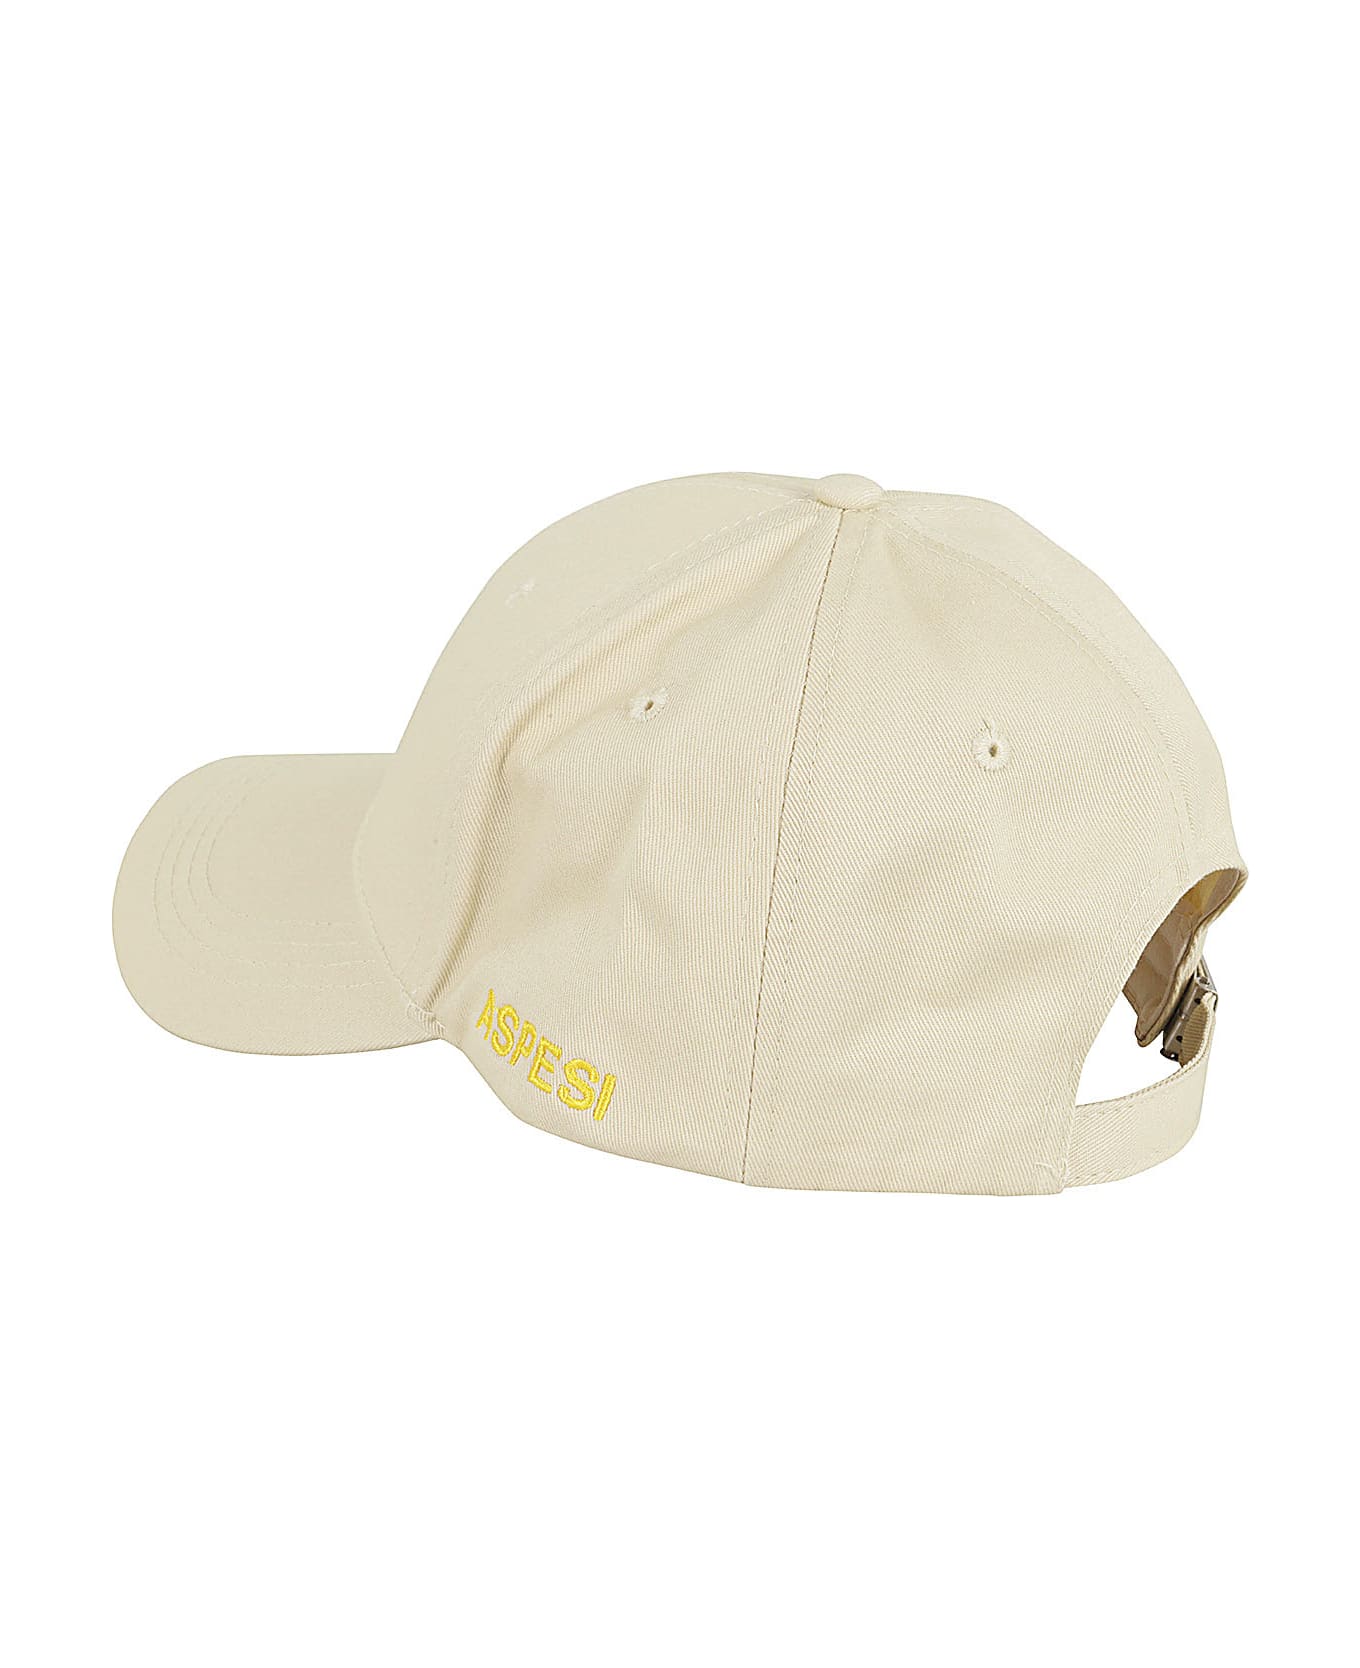 Aspesi Cappello Mod 2c01 - Coloniale  帽子